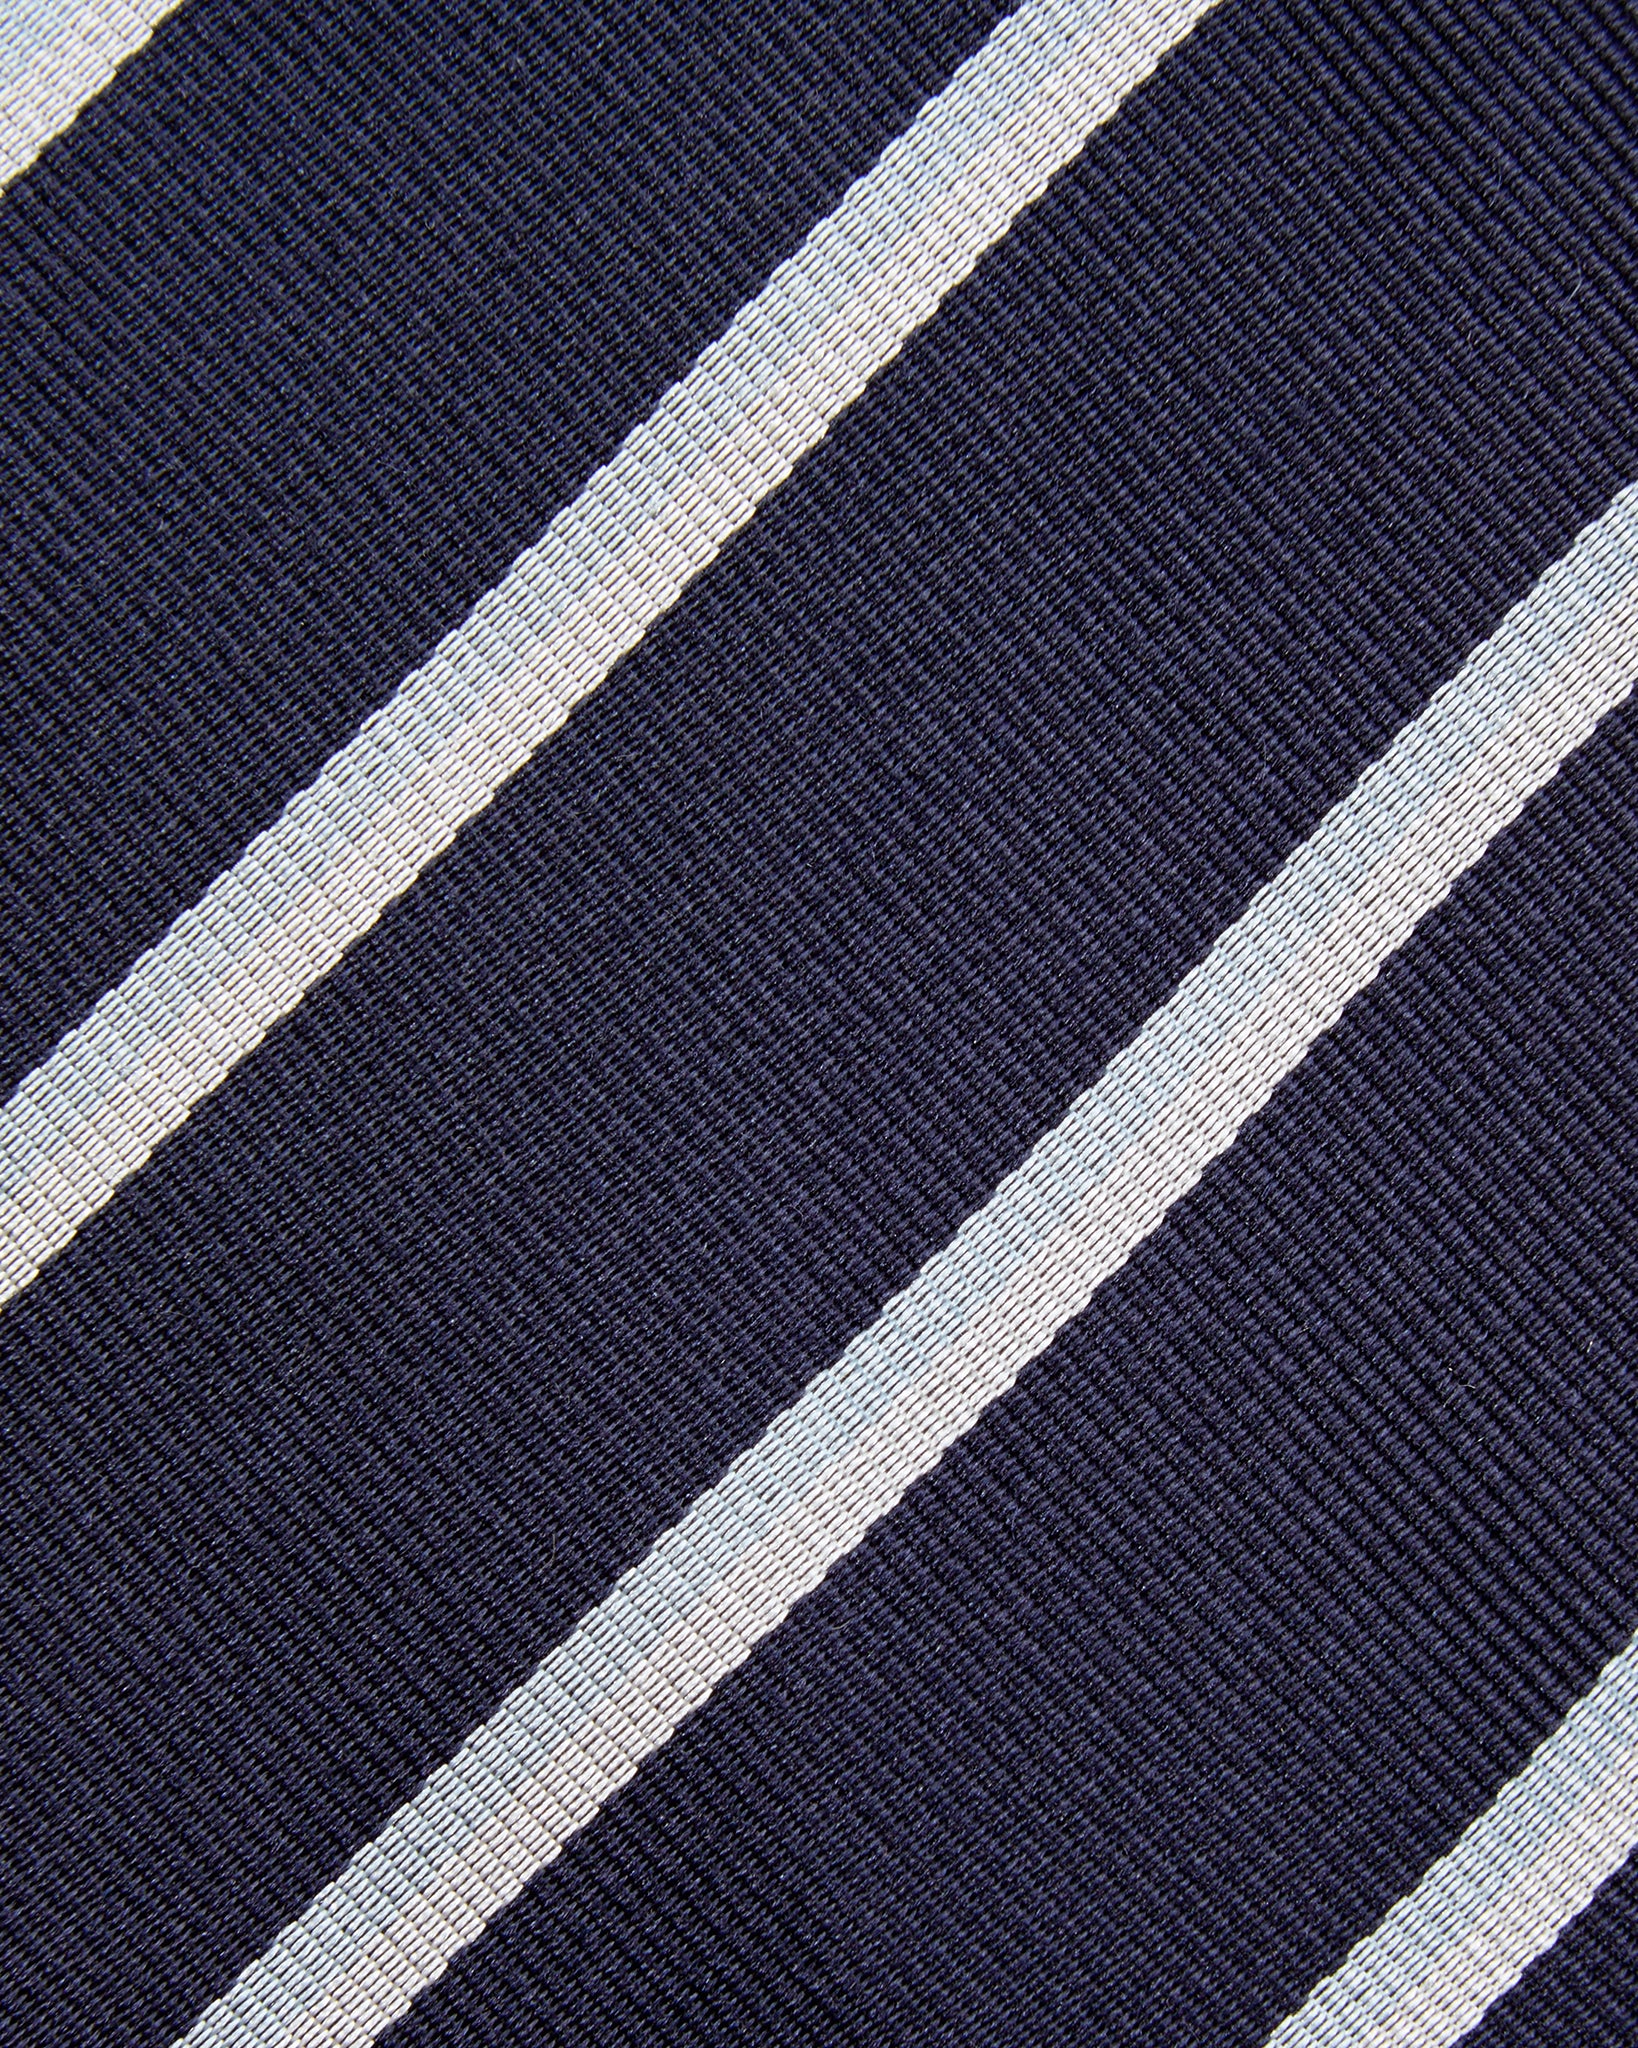 Silk Repp Tie in Navy/Sky/White Stripe